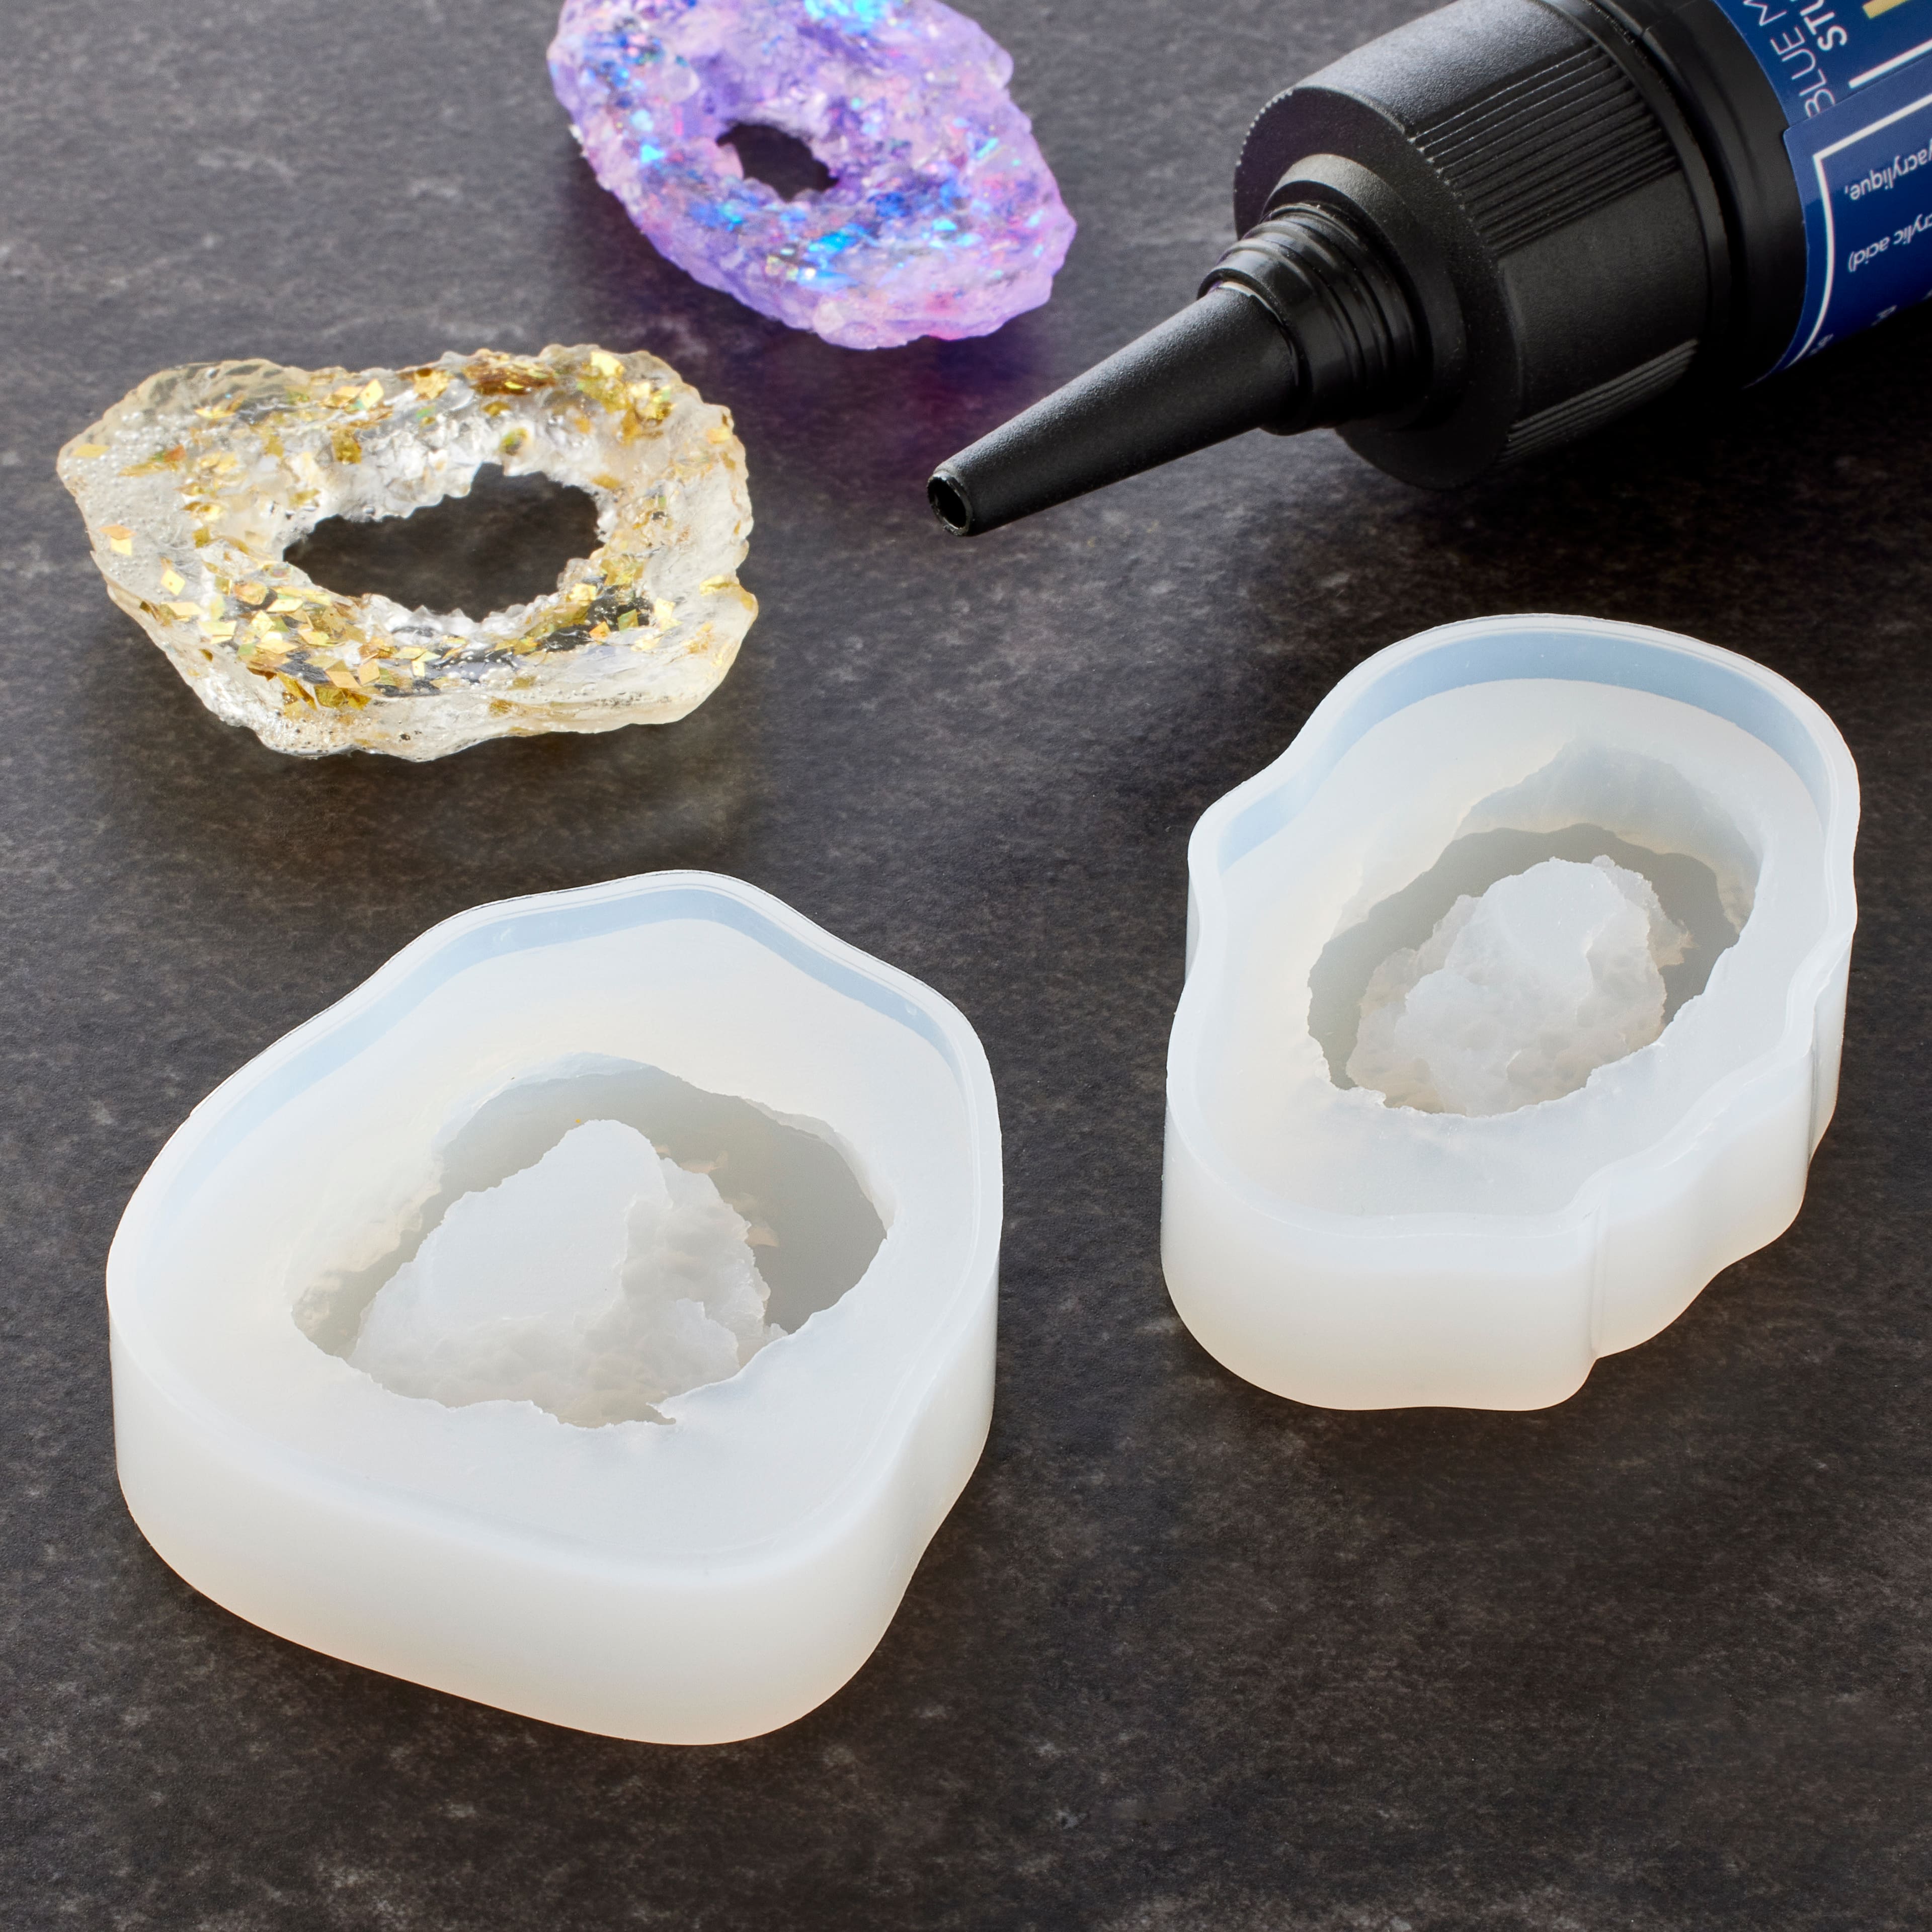 Blue Moon Studio™ UV Resin Craft Clay Filler Kit